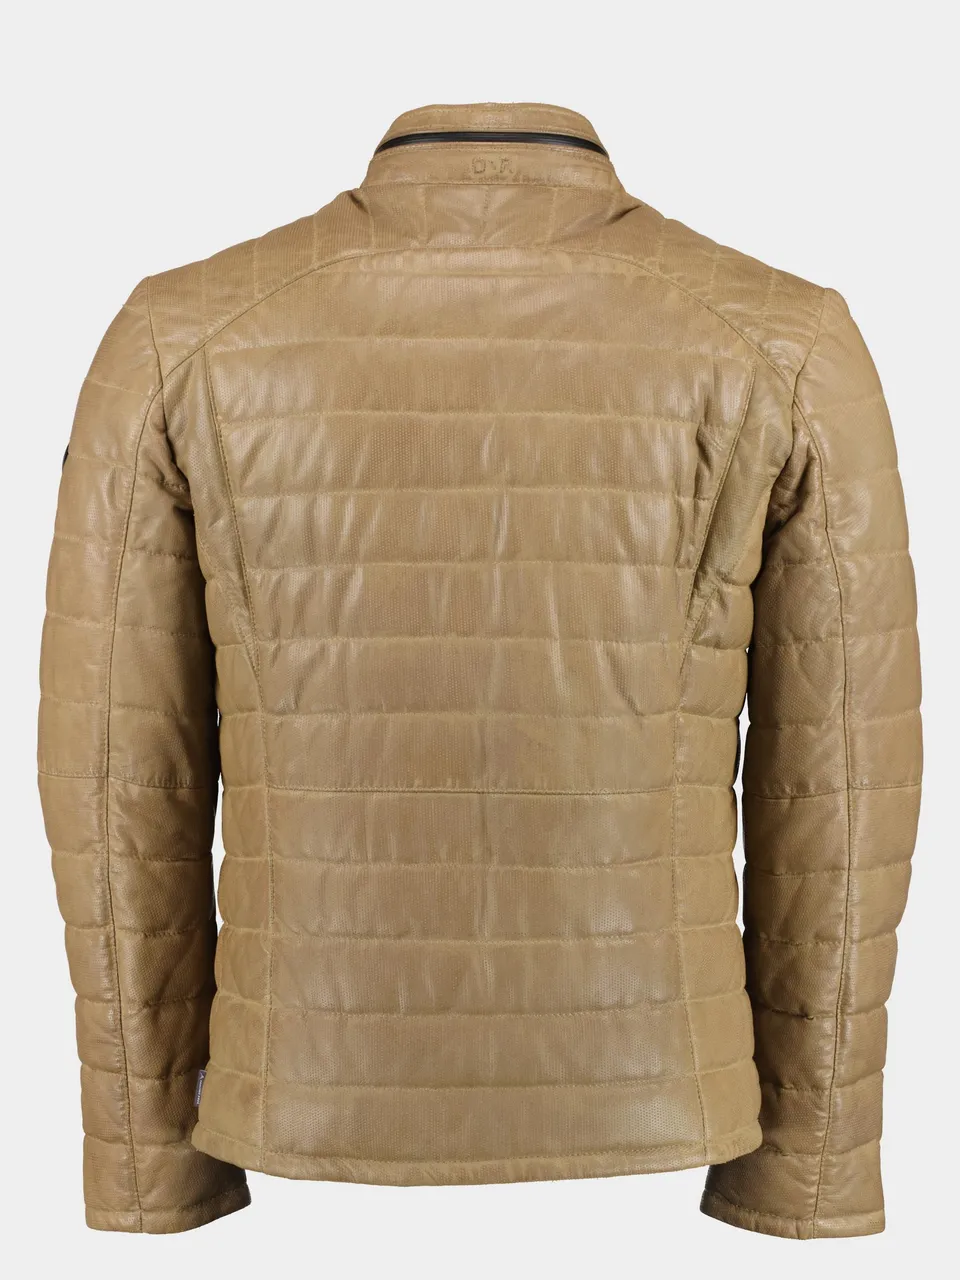 Donders 1860 Lederen jack leather jacket 52290/623